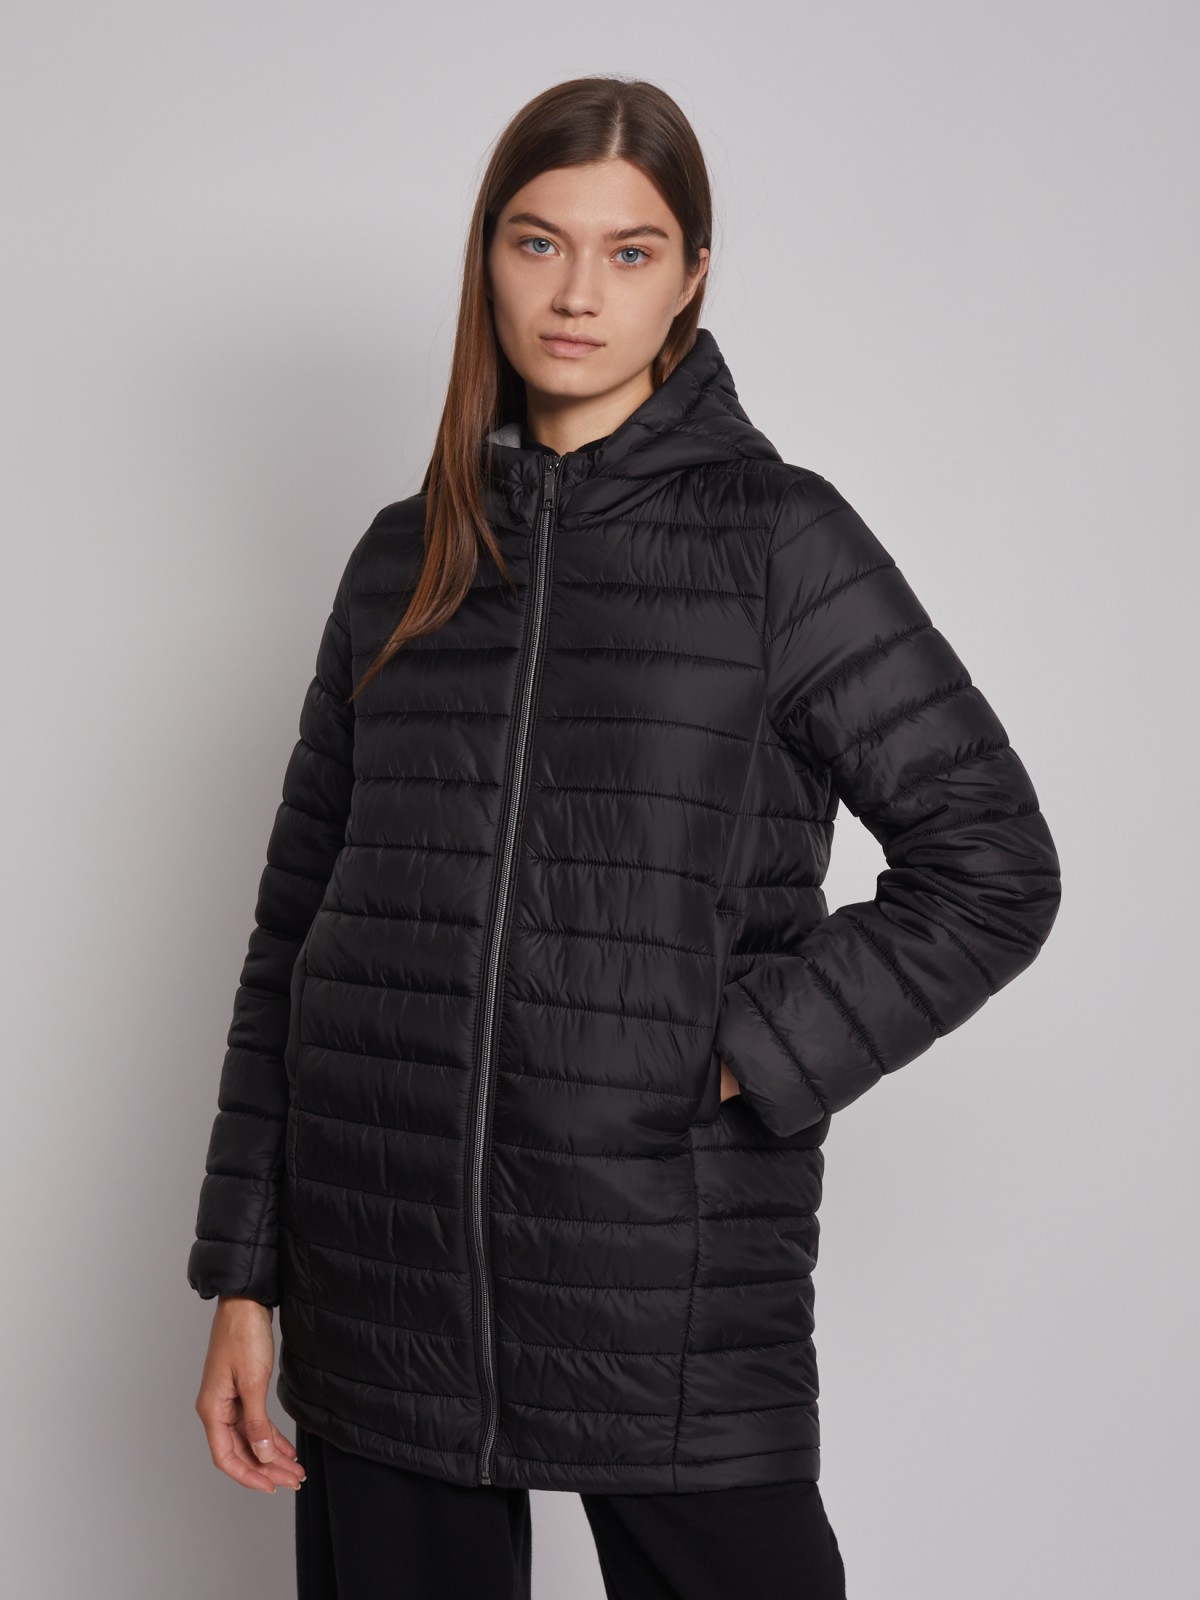 Утеплённое пальто с капюшоном zolla 022335212024, цвет черный, размер XS - фото 3